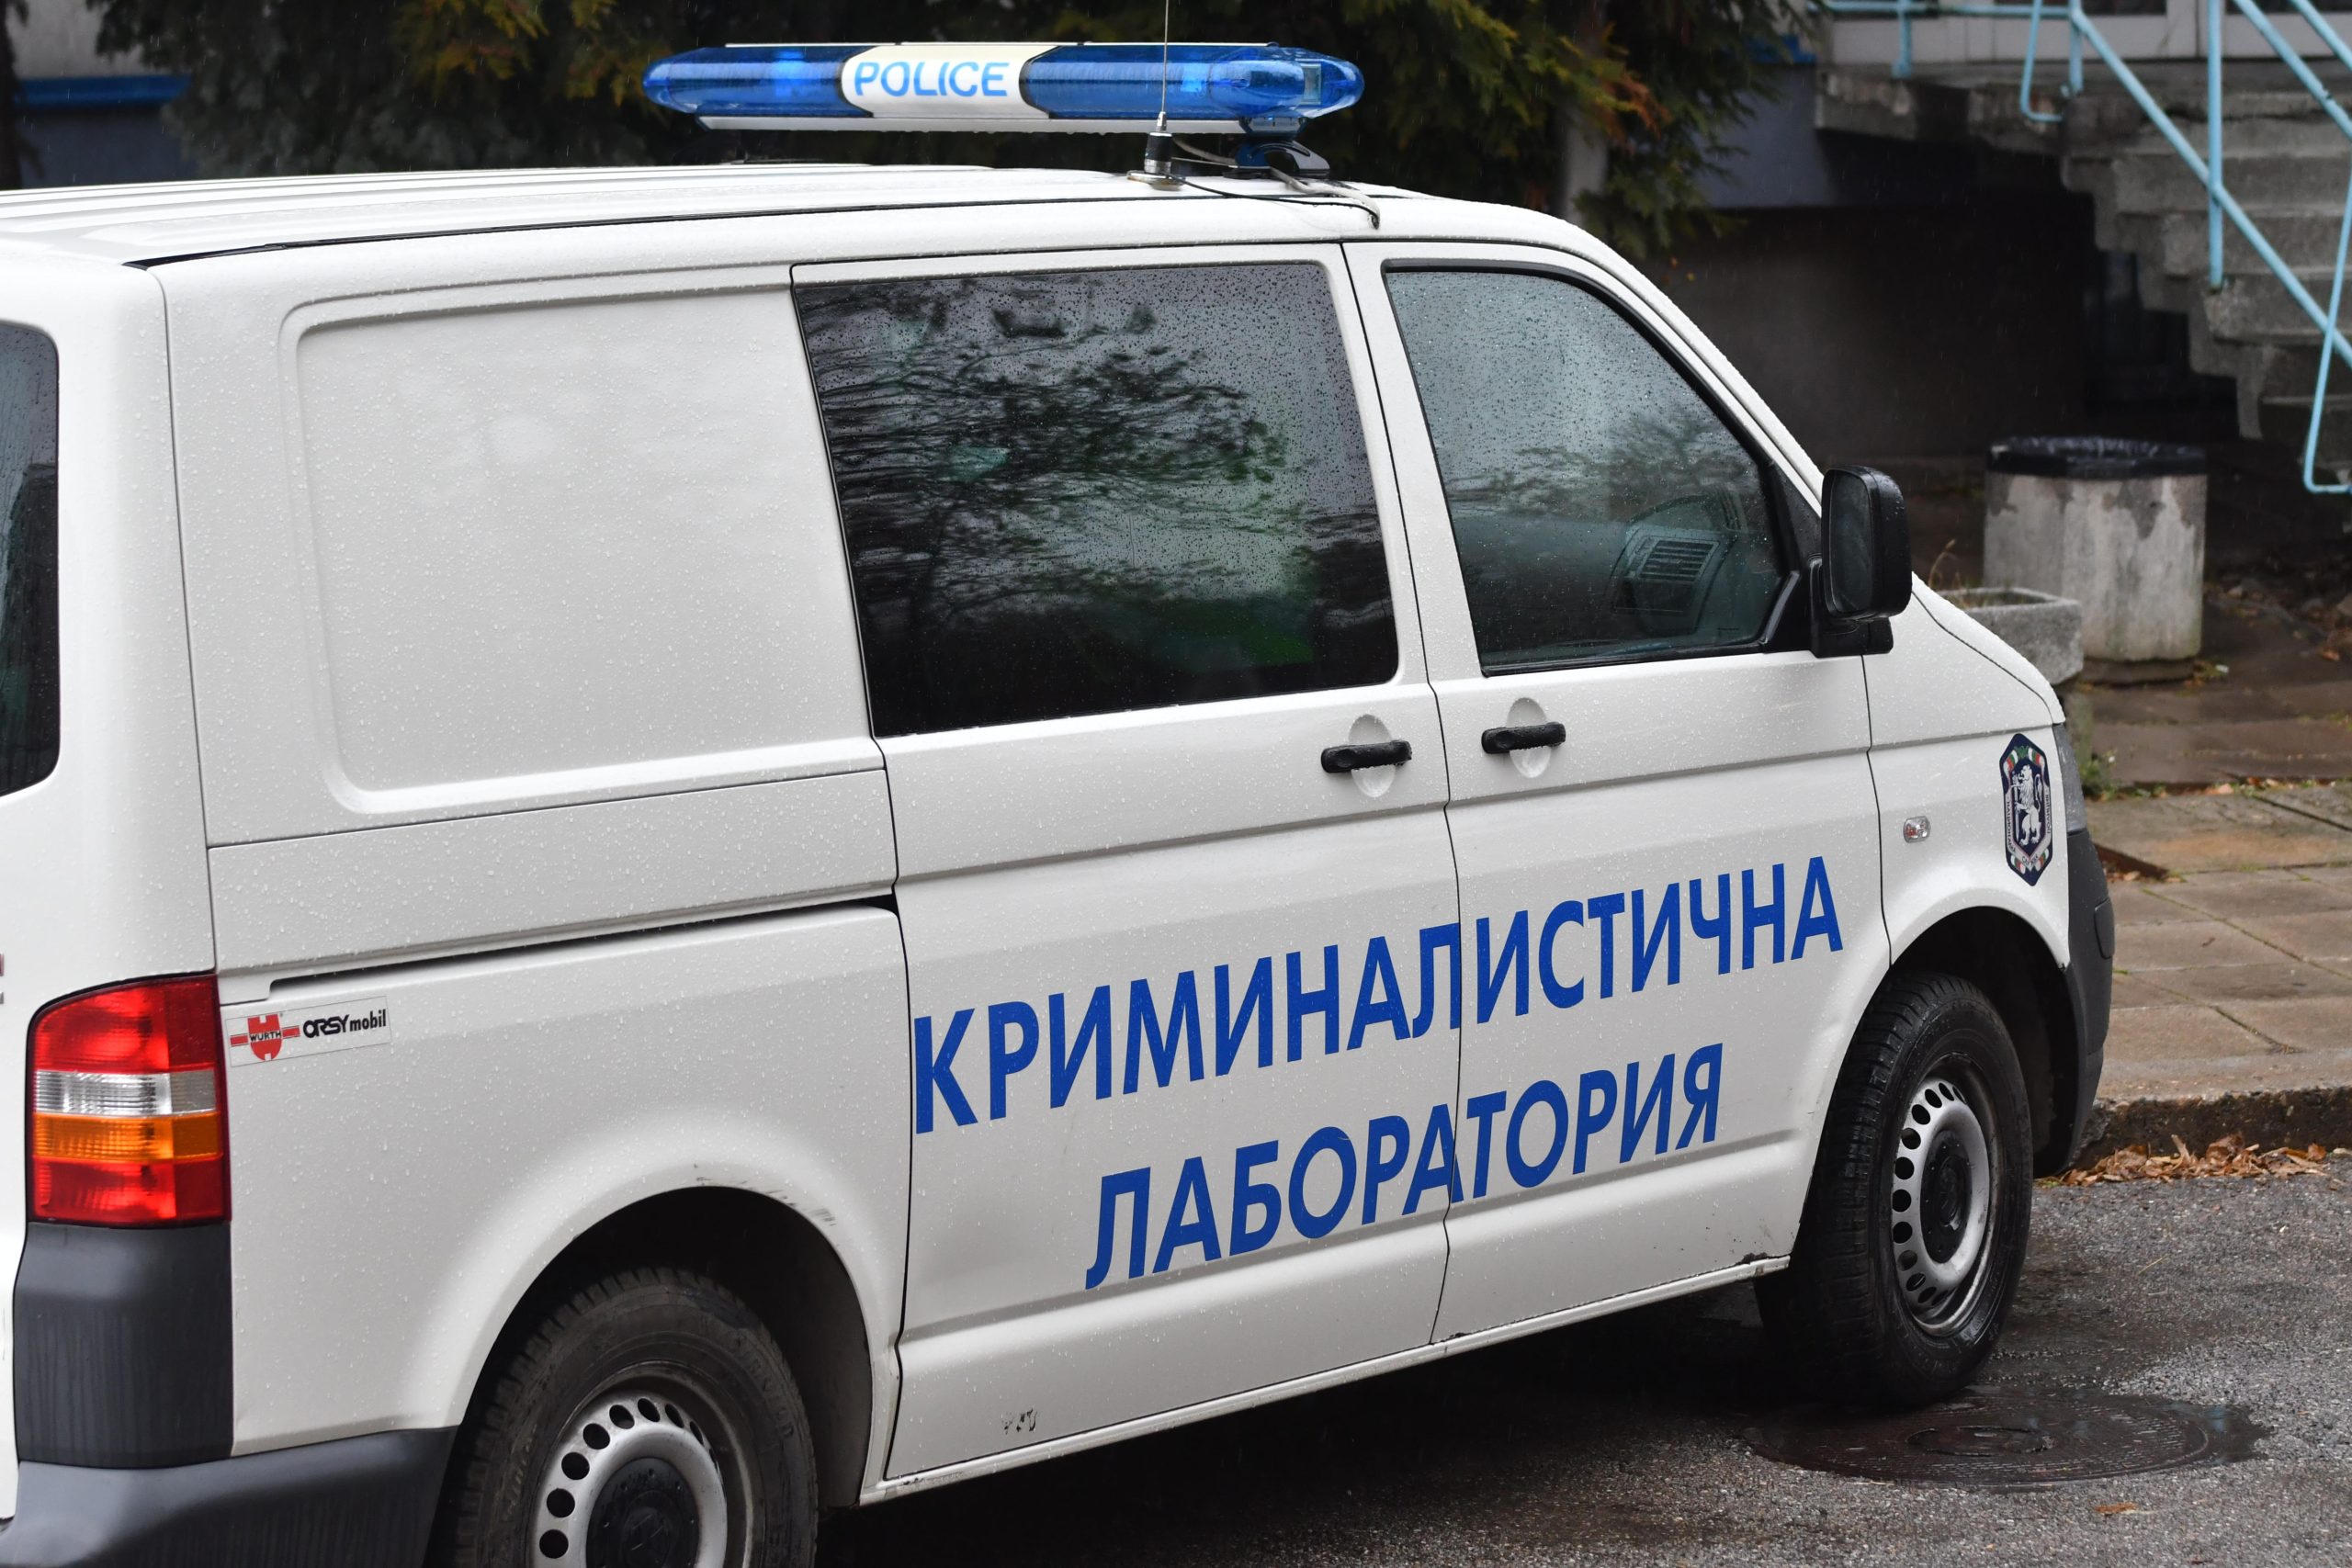 Софийска районна прокуратура ръководи досъдебно производство за склоняване към самоубийство